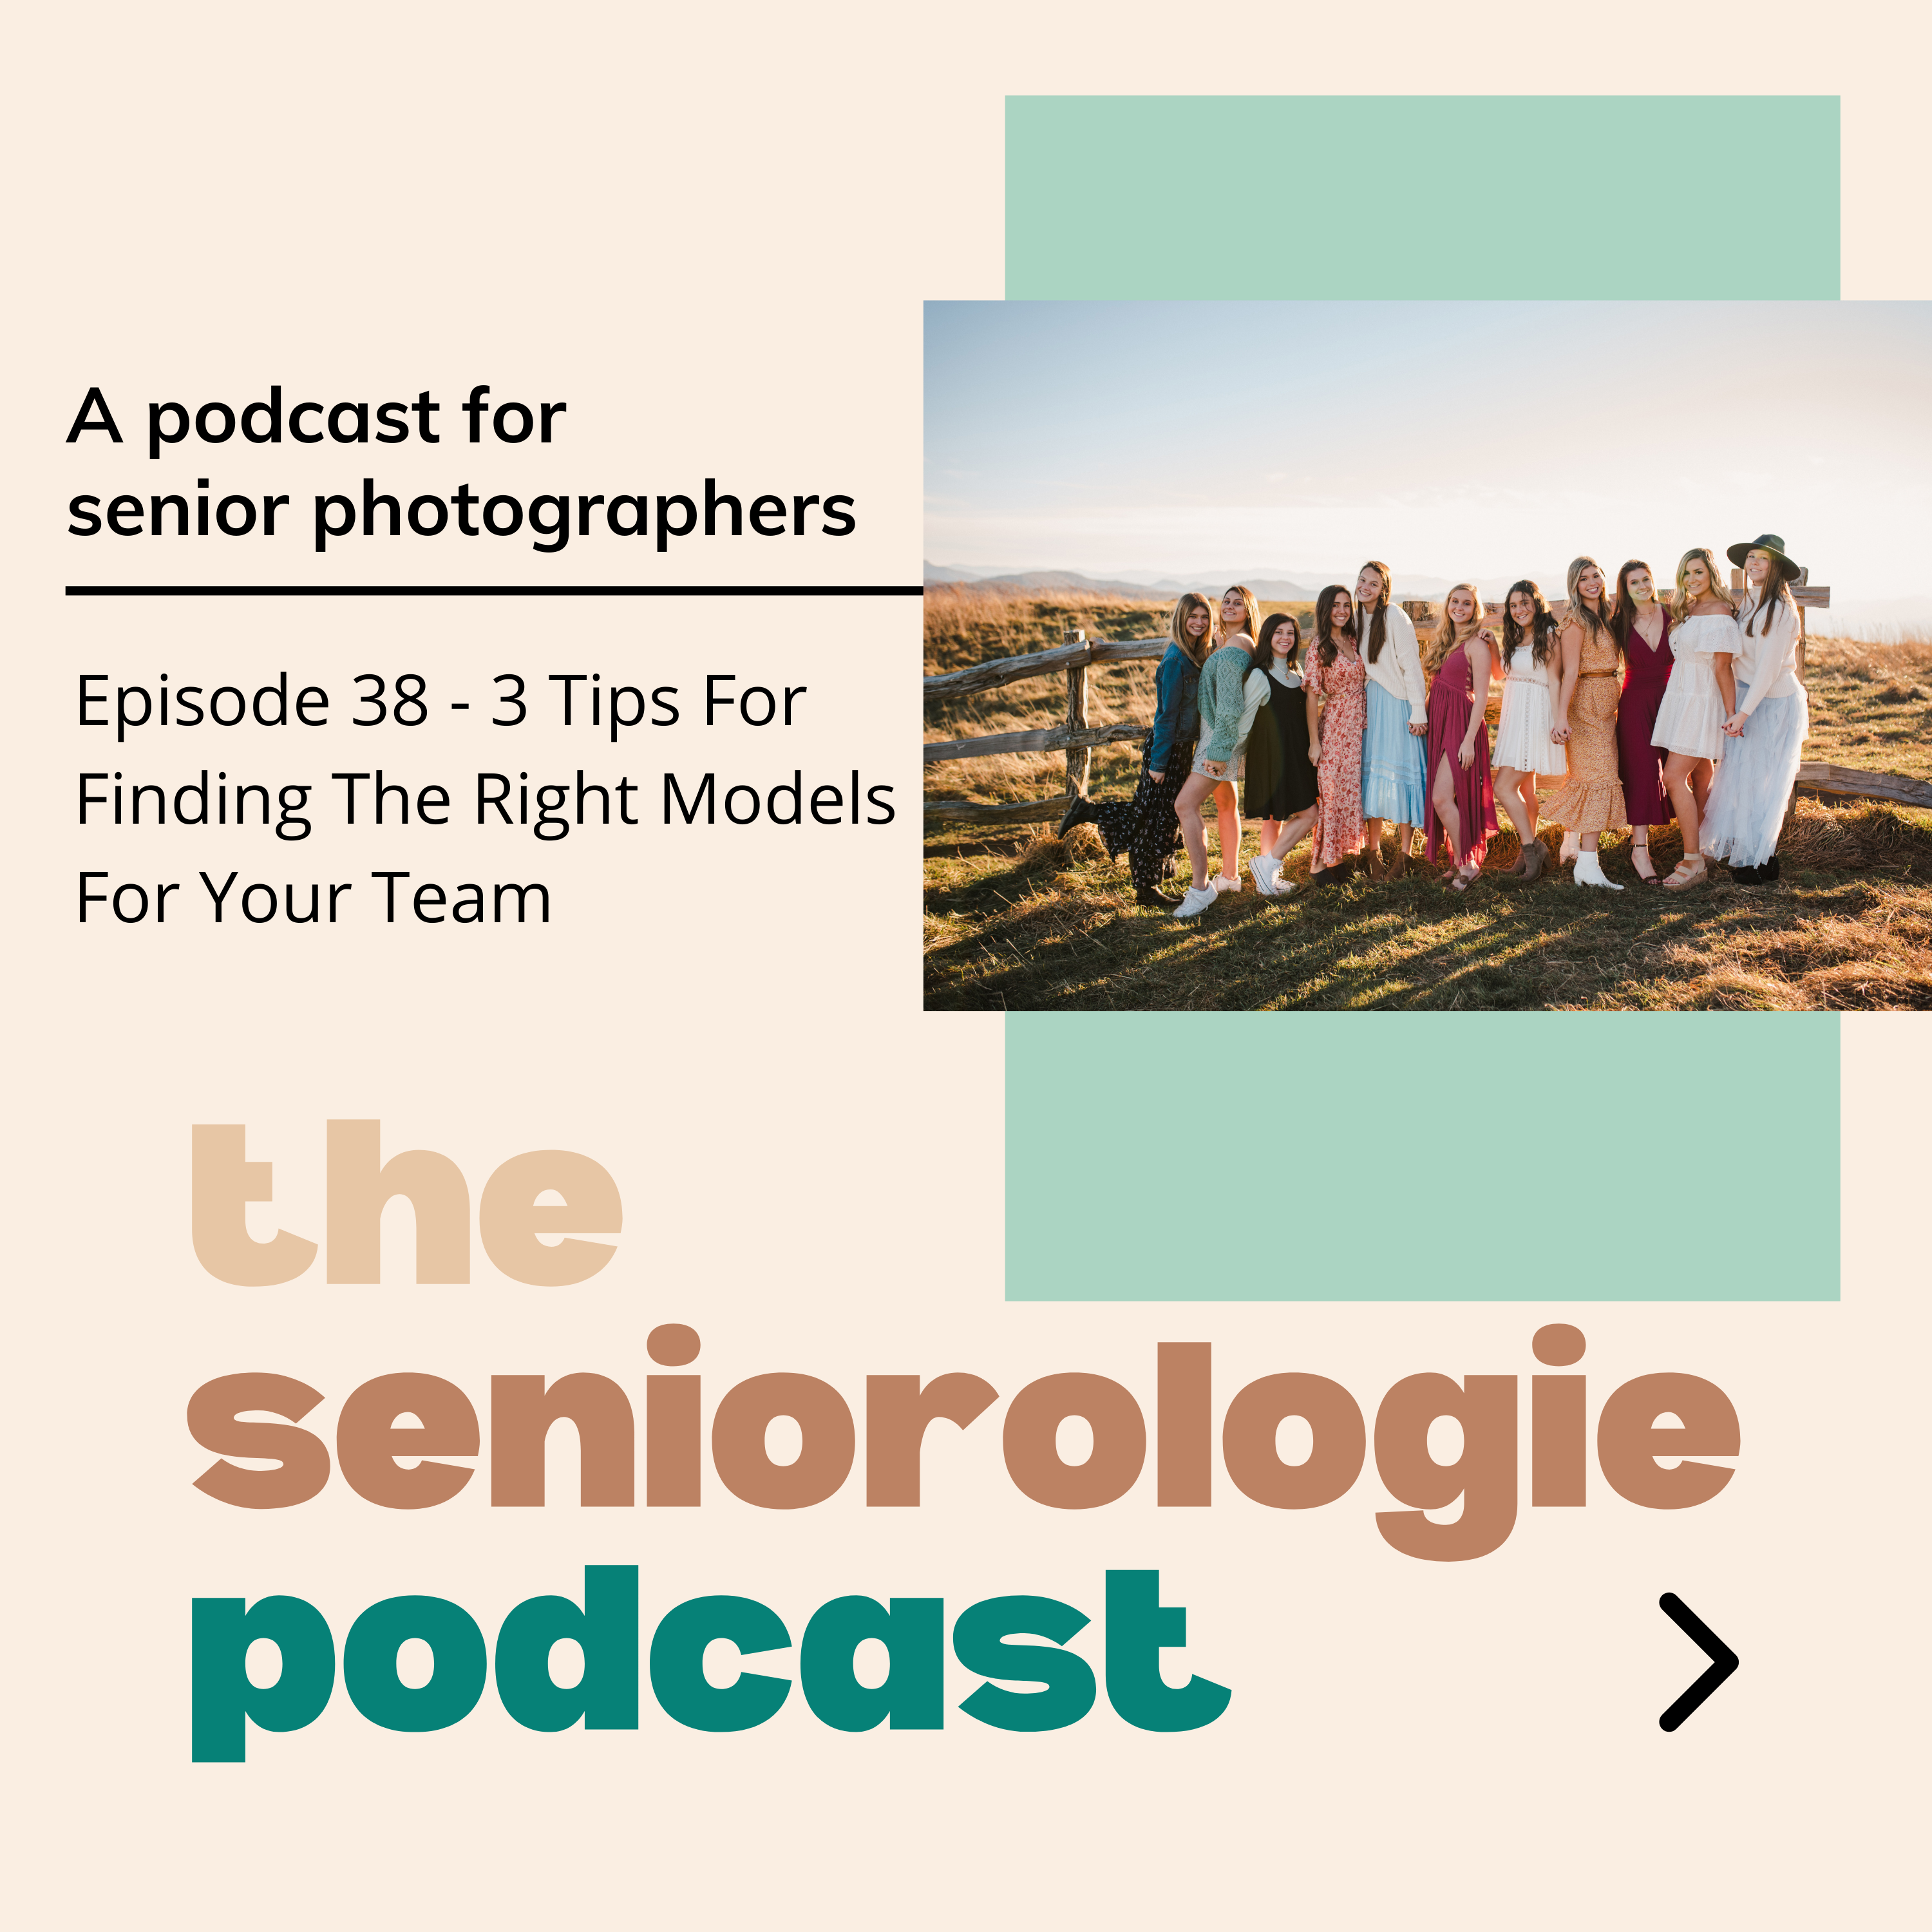 3 Tips for Picking Models for your Spokesmodel Team for senior portrait photographers, shared on Episode 38 of the Seniorologie Podcast